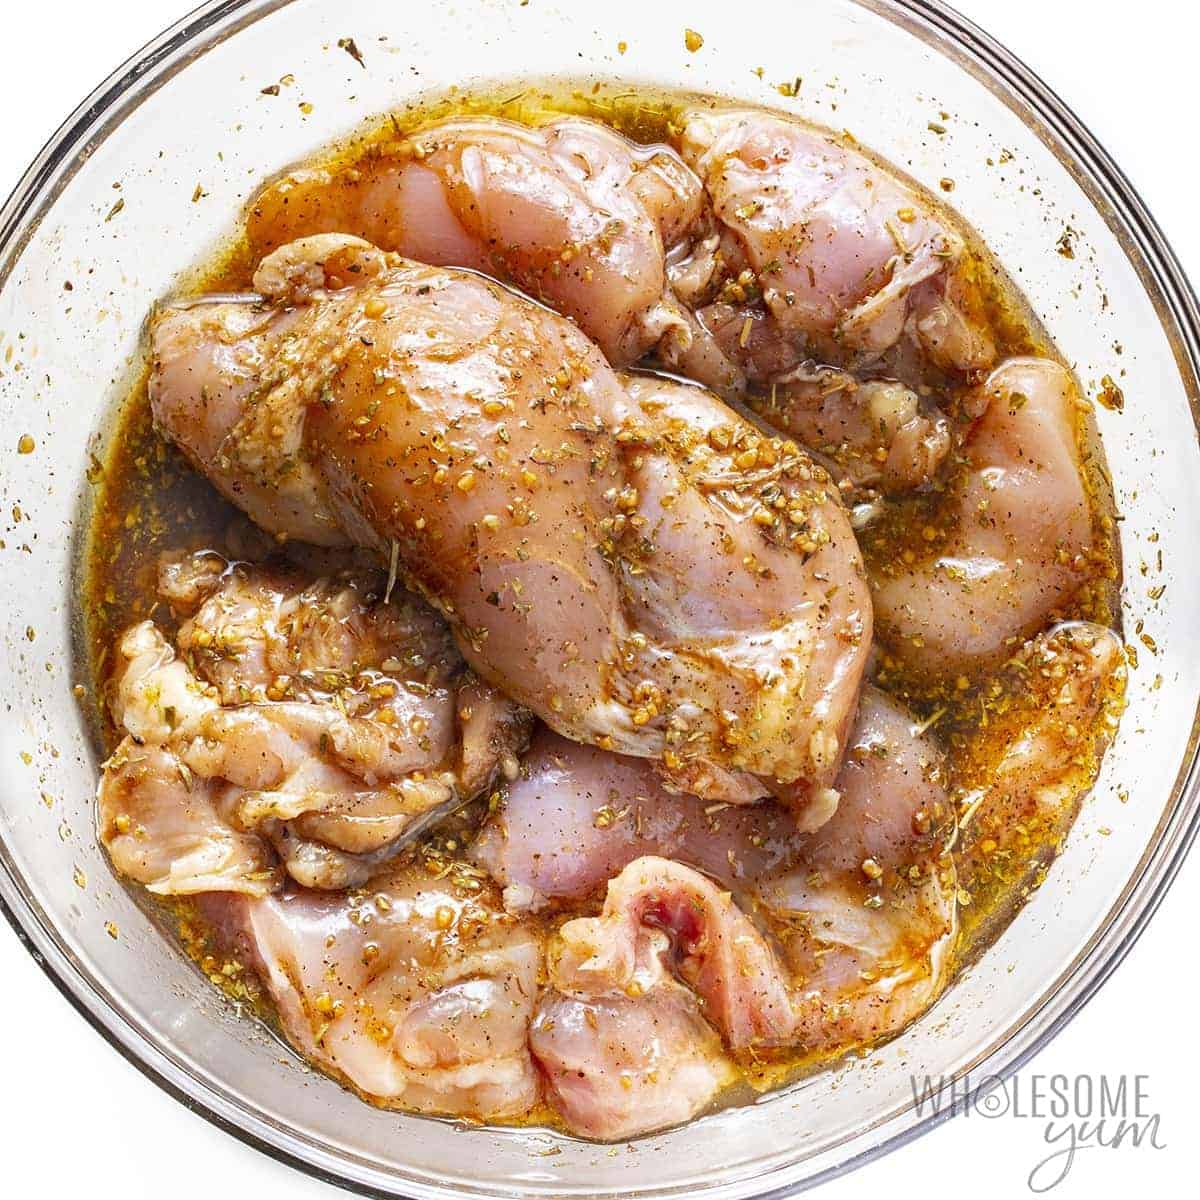 Raw chicken thighs in a bowl with Mediterranean chicken marinade.